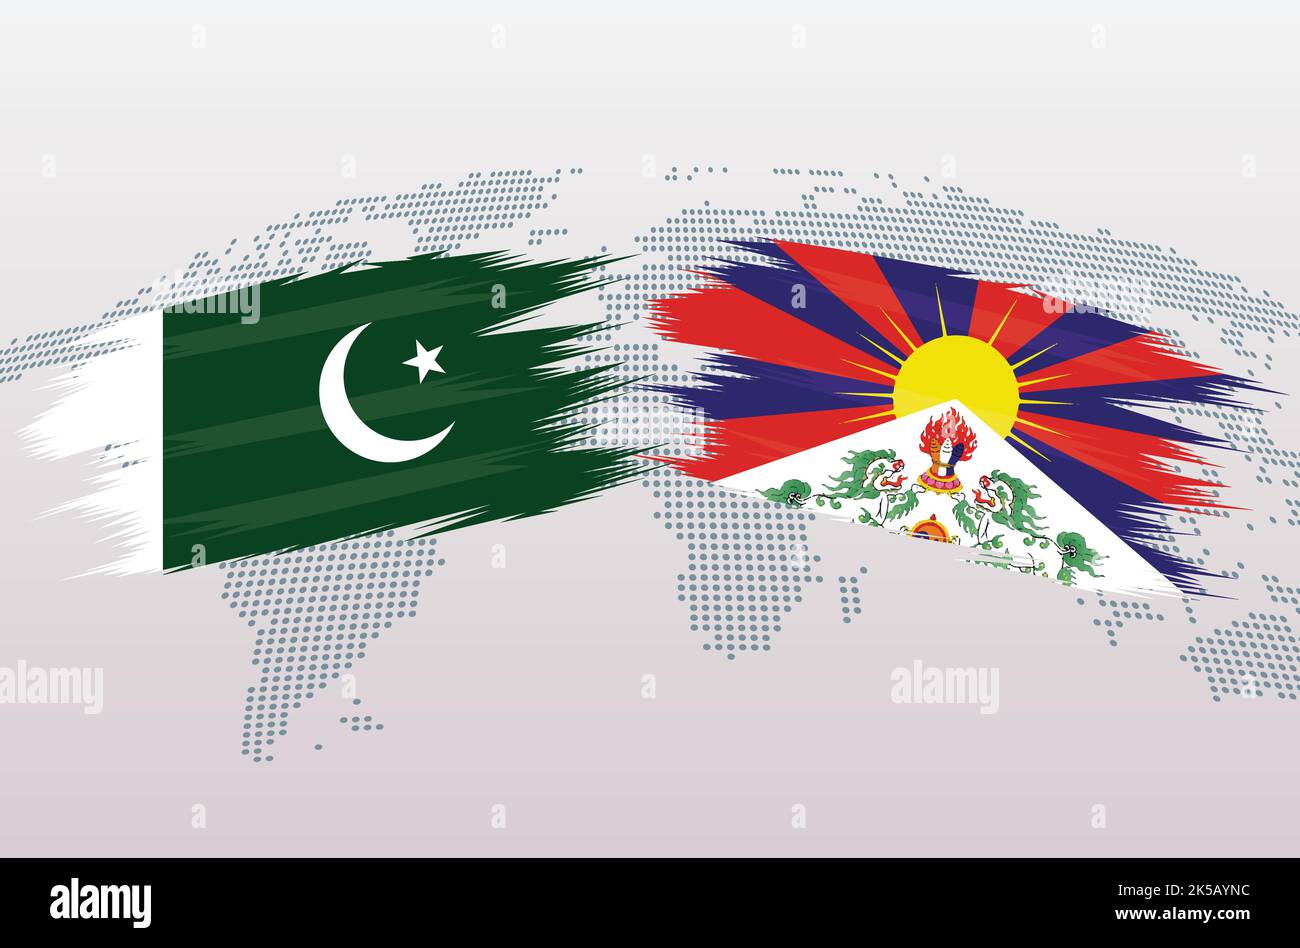 Bandiere Pakistan vs Tibet. Bandiere della Repubblica islamica del Pakistan contro Tibet, isolate su sfondo grigio della mappa del mondo. Illustrazione vettoriale. Illustrazione Vettoriale